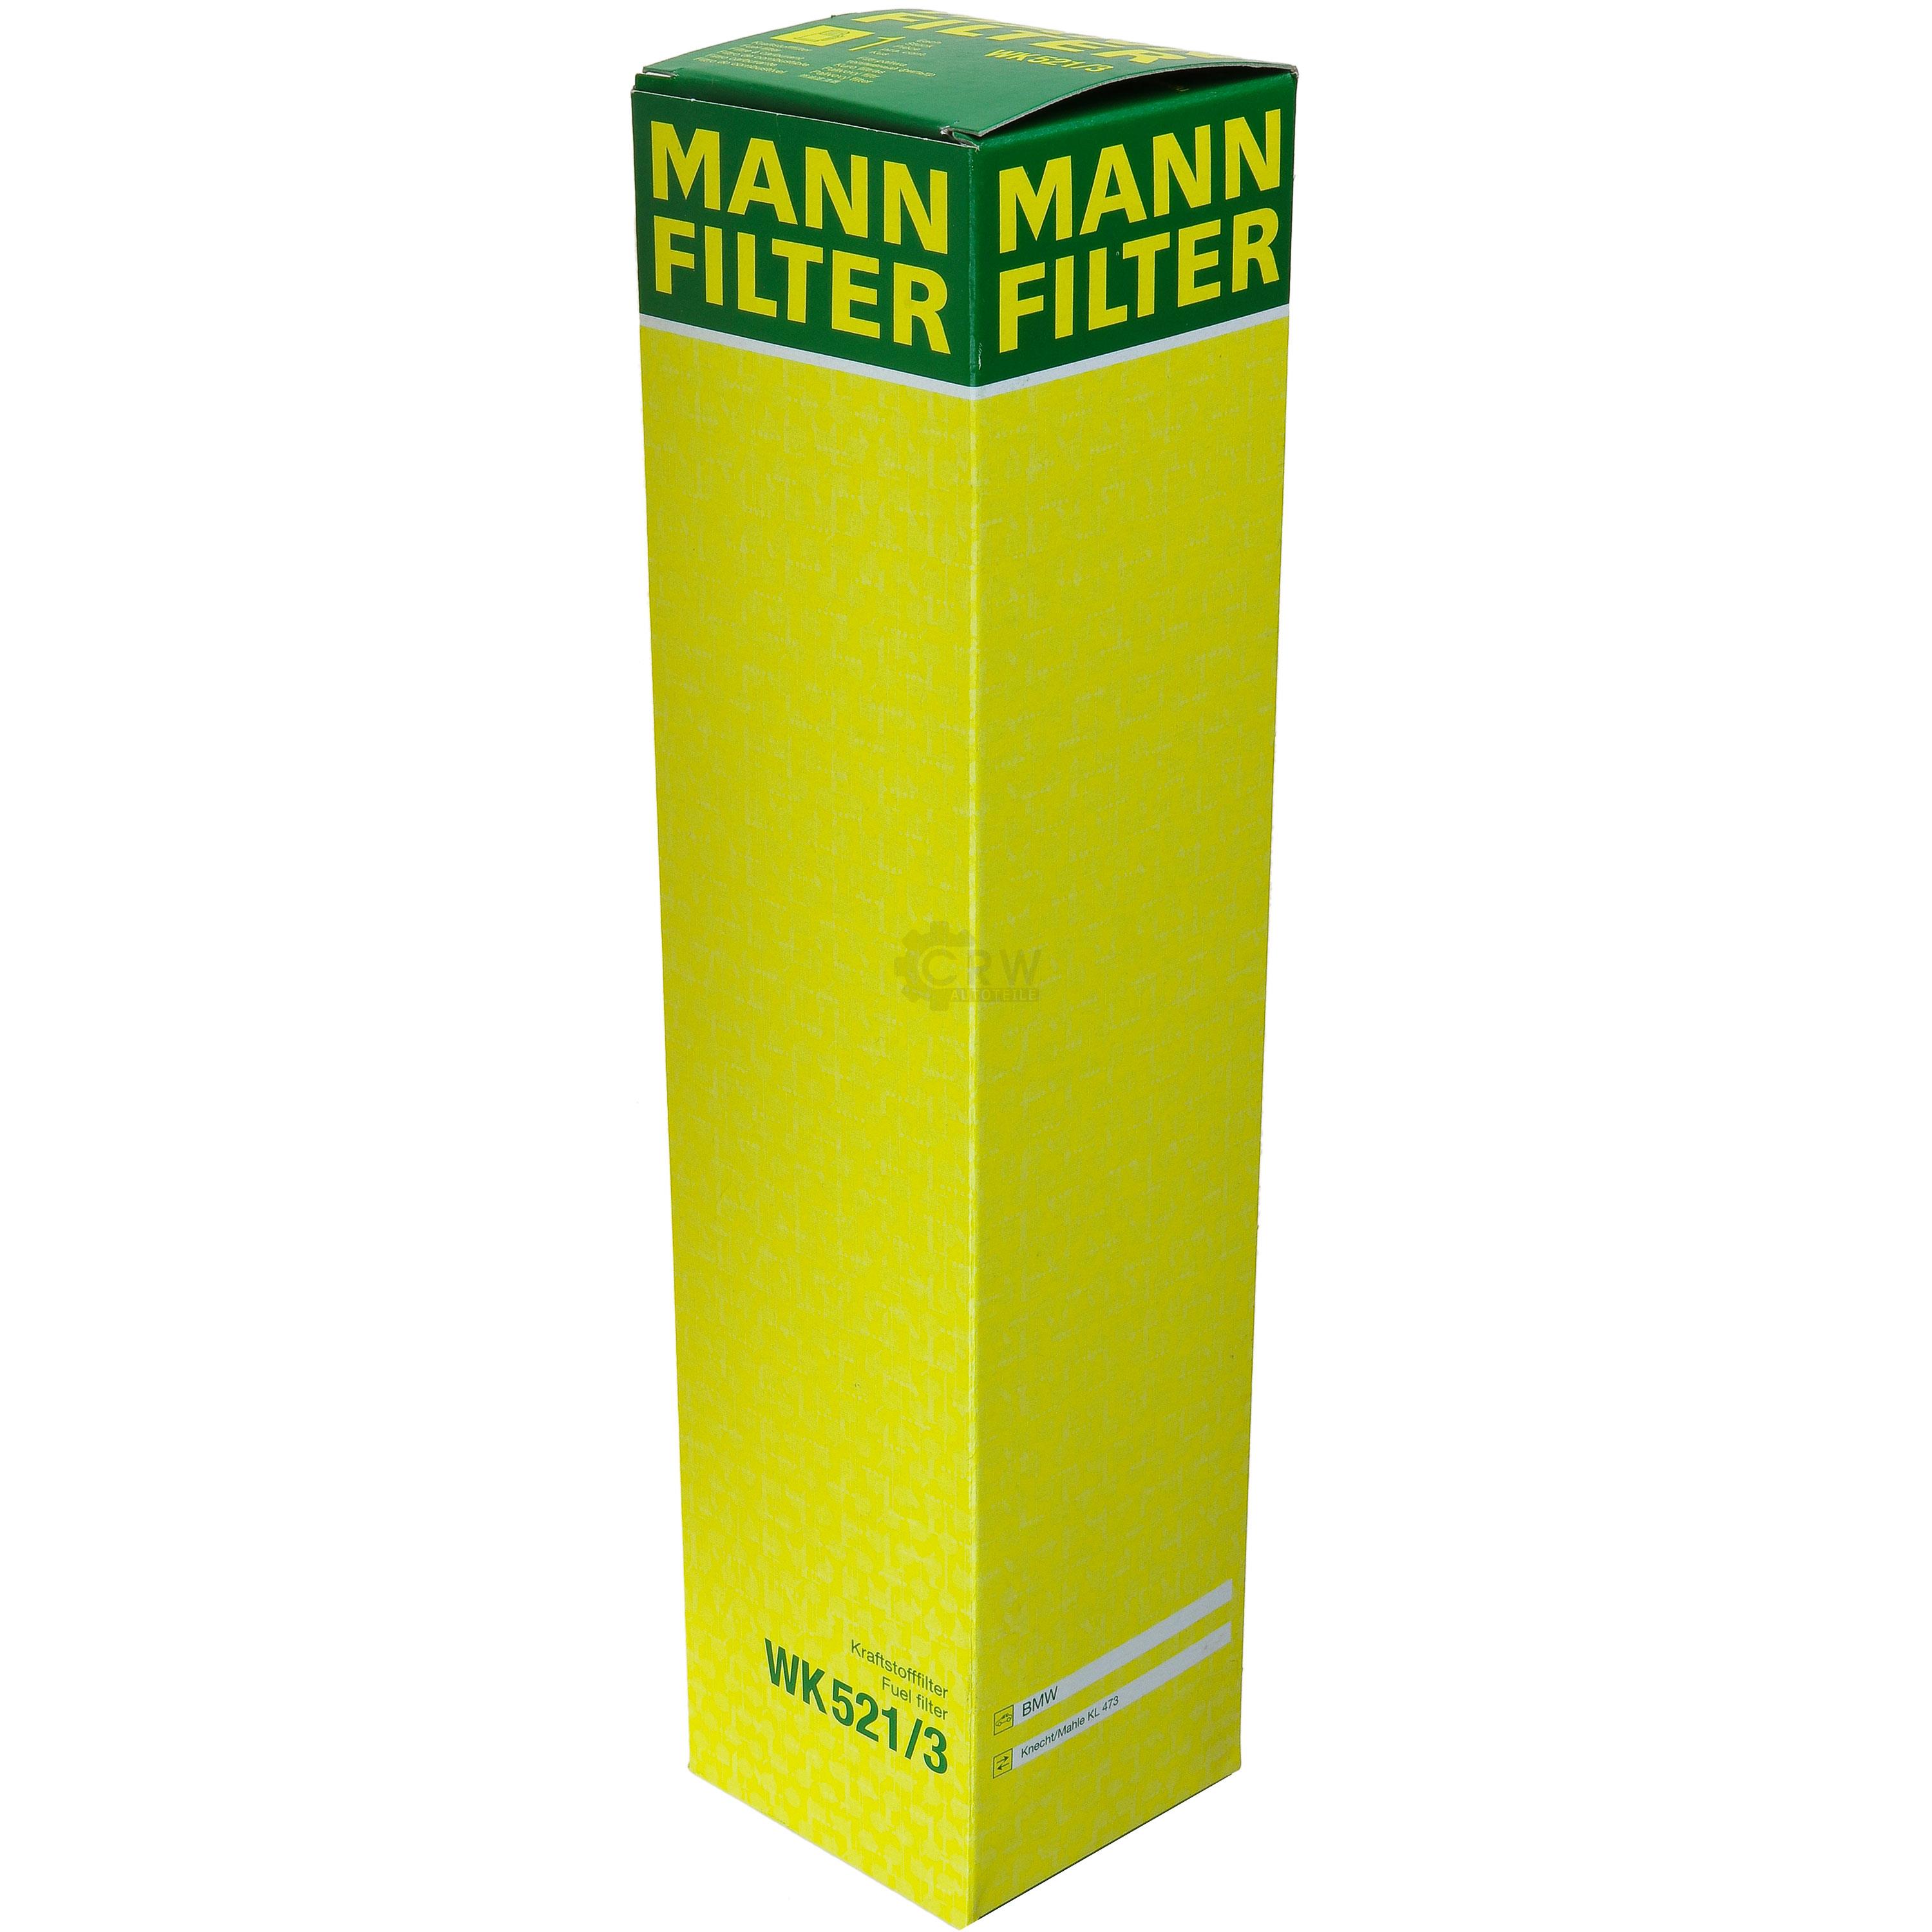 MANN-FILTER Kraftstofffilter WK 521/3 Fuel Filter